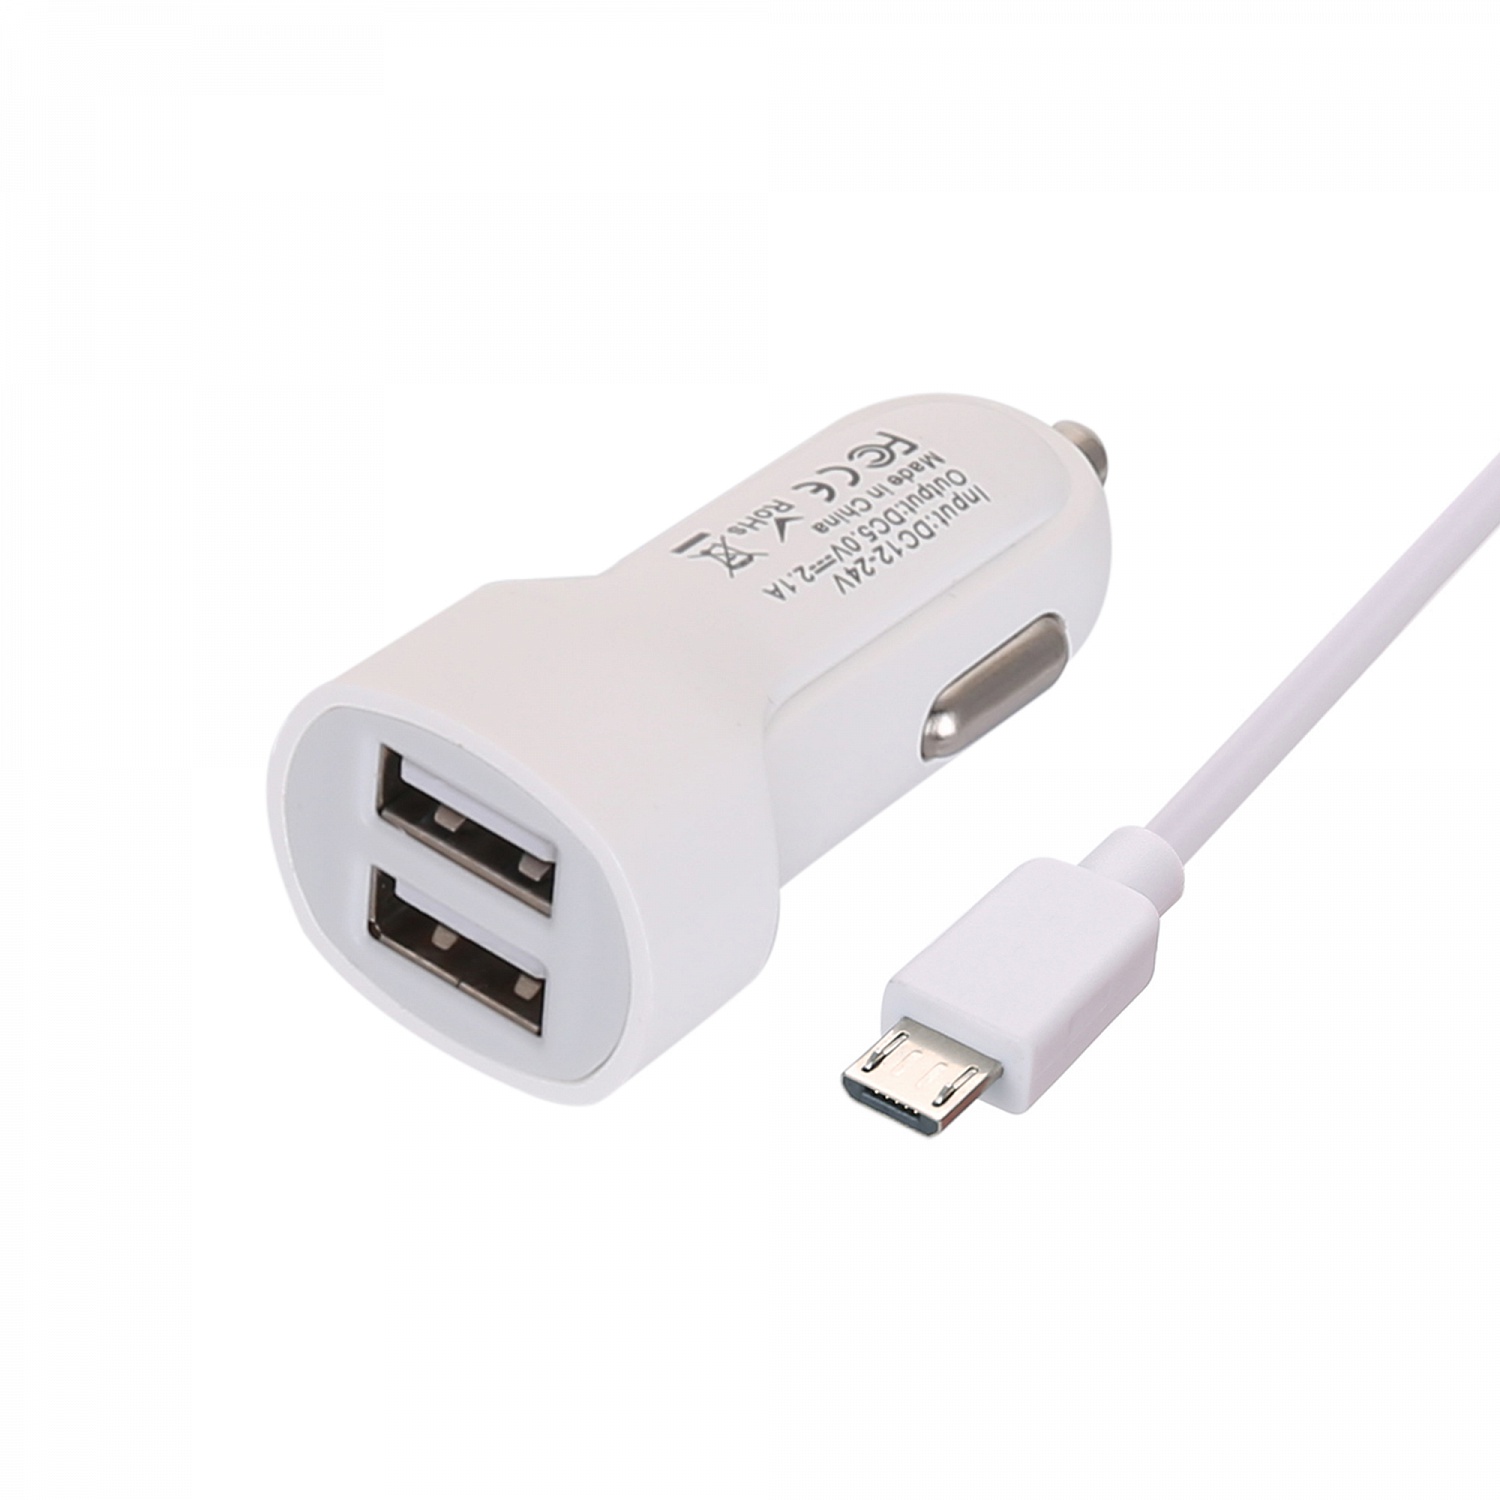 ЗУ в прикуриватель MUJU MJ-C03  + кабель iOS Lightning,  (2*USB, 2100mA, 1м)